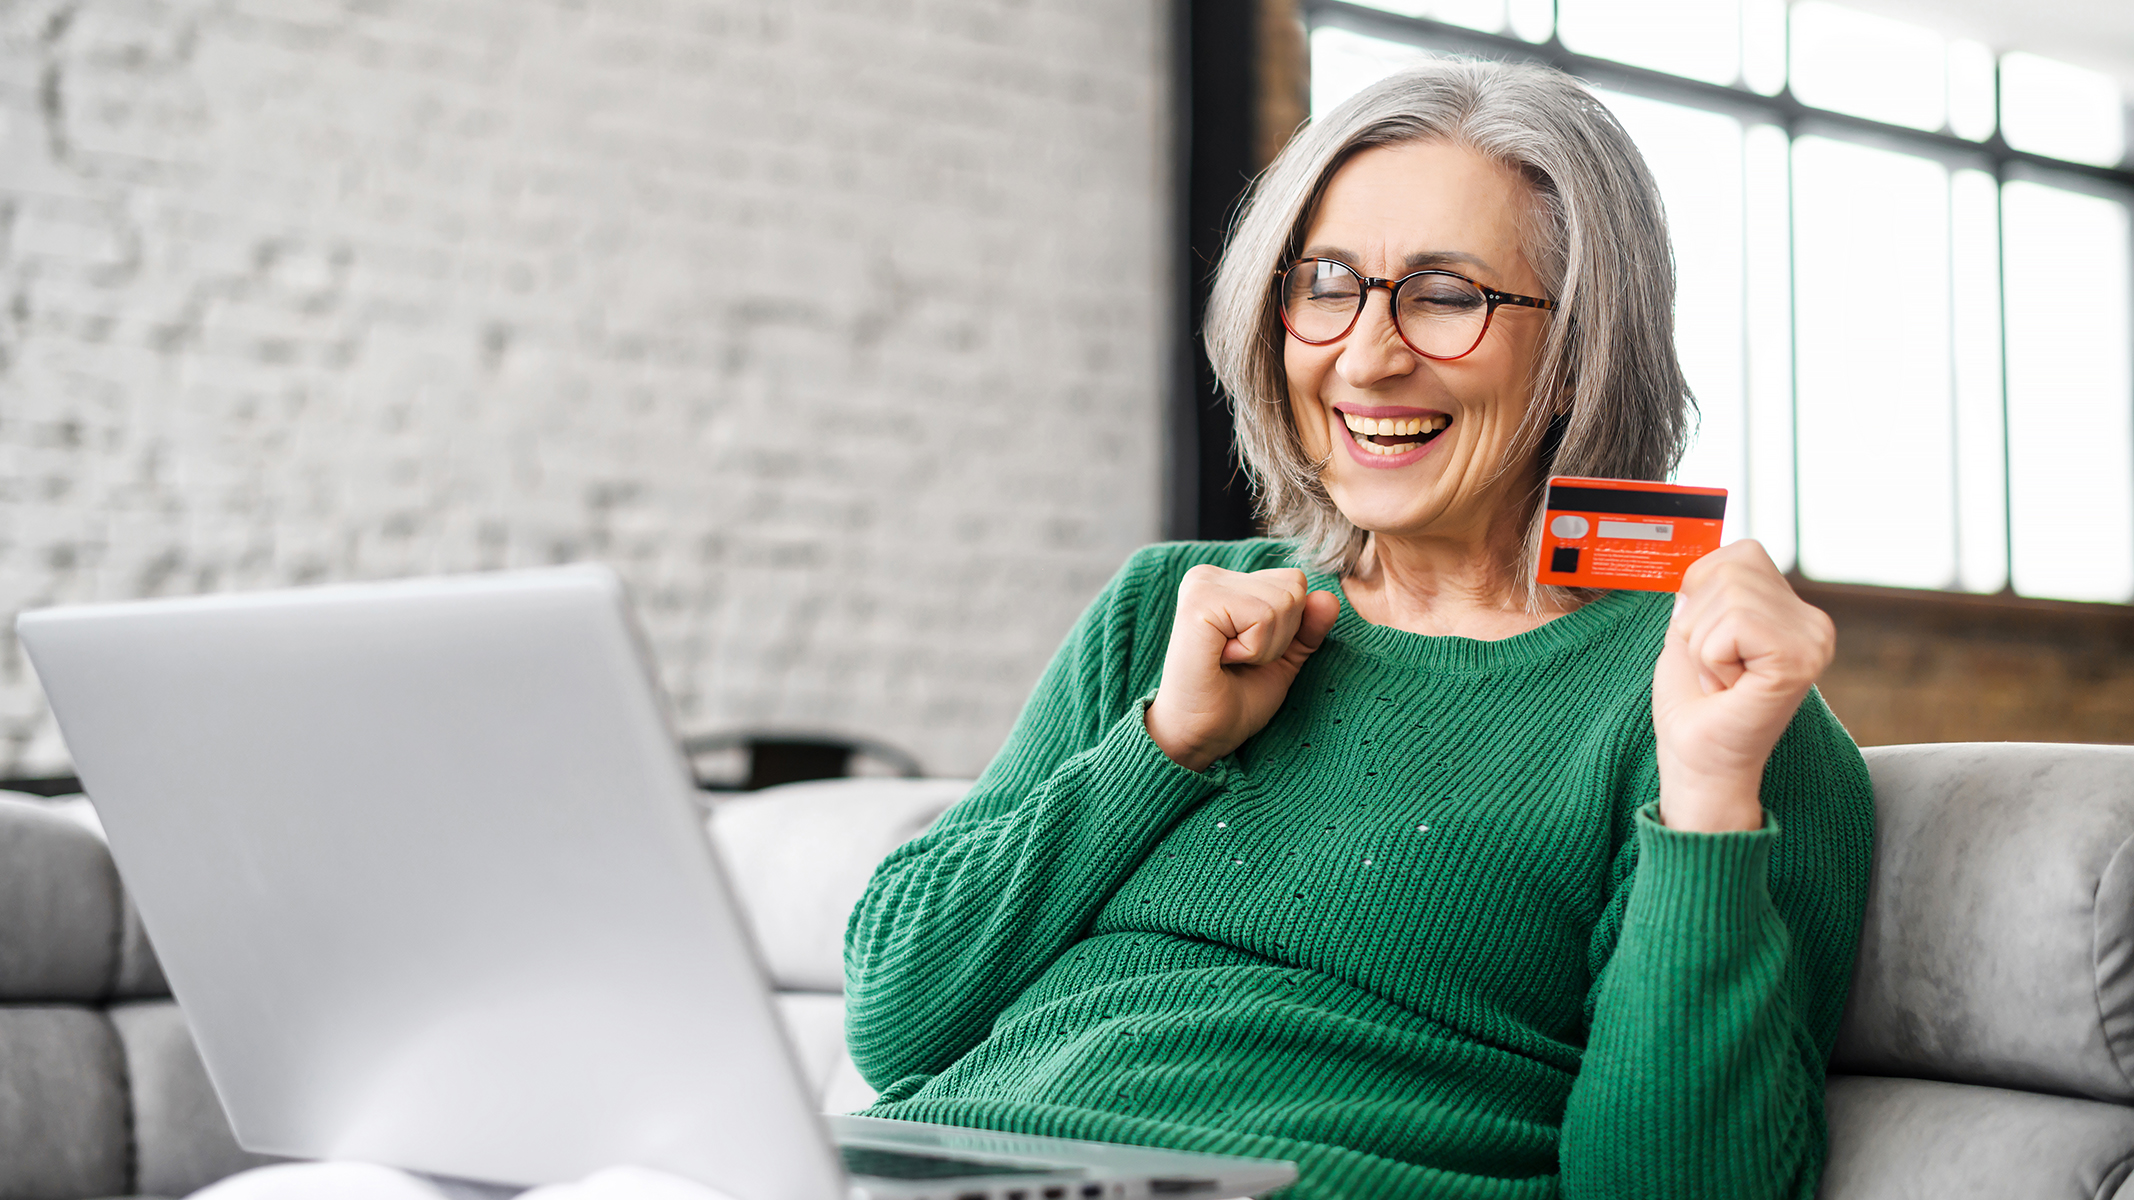 Mujer mayor sonriendo y sentada en el sofá con una tarjeta y una laptop abierta.